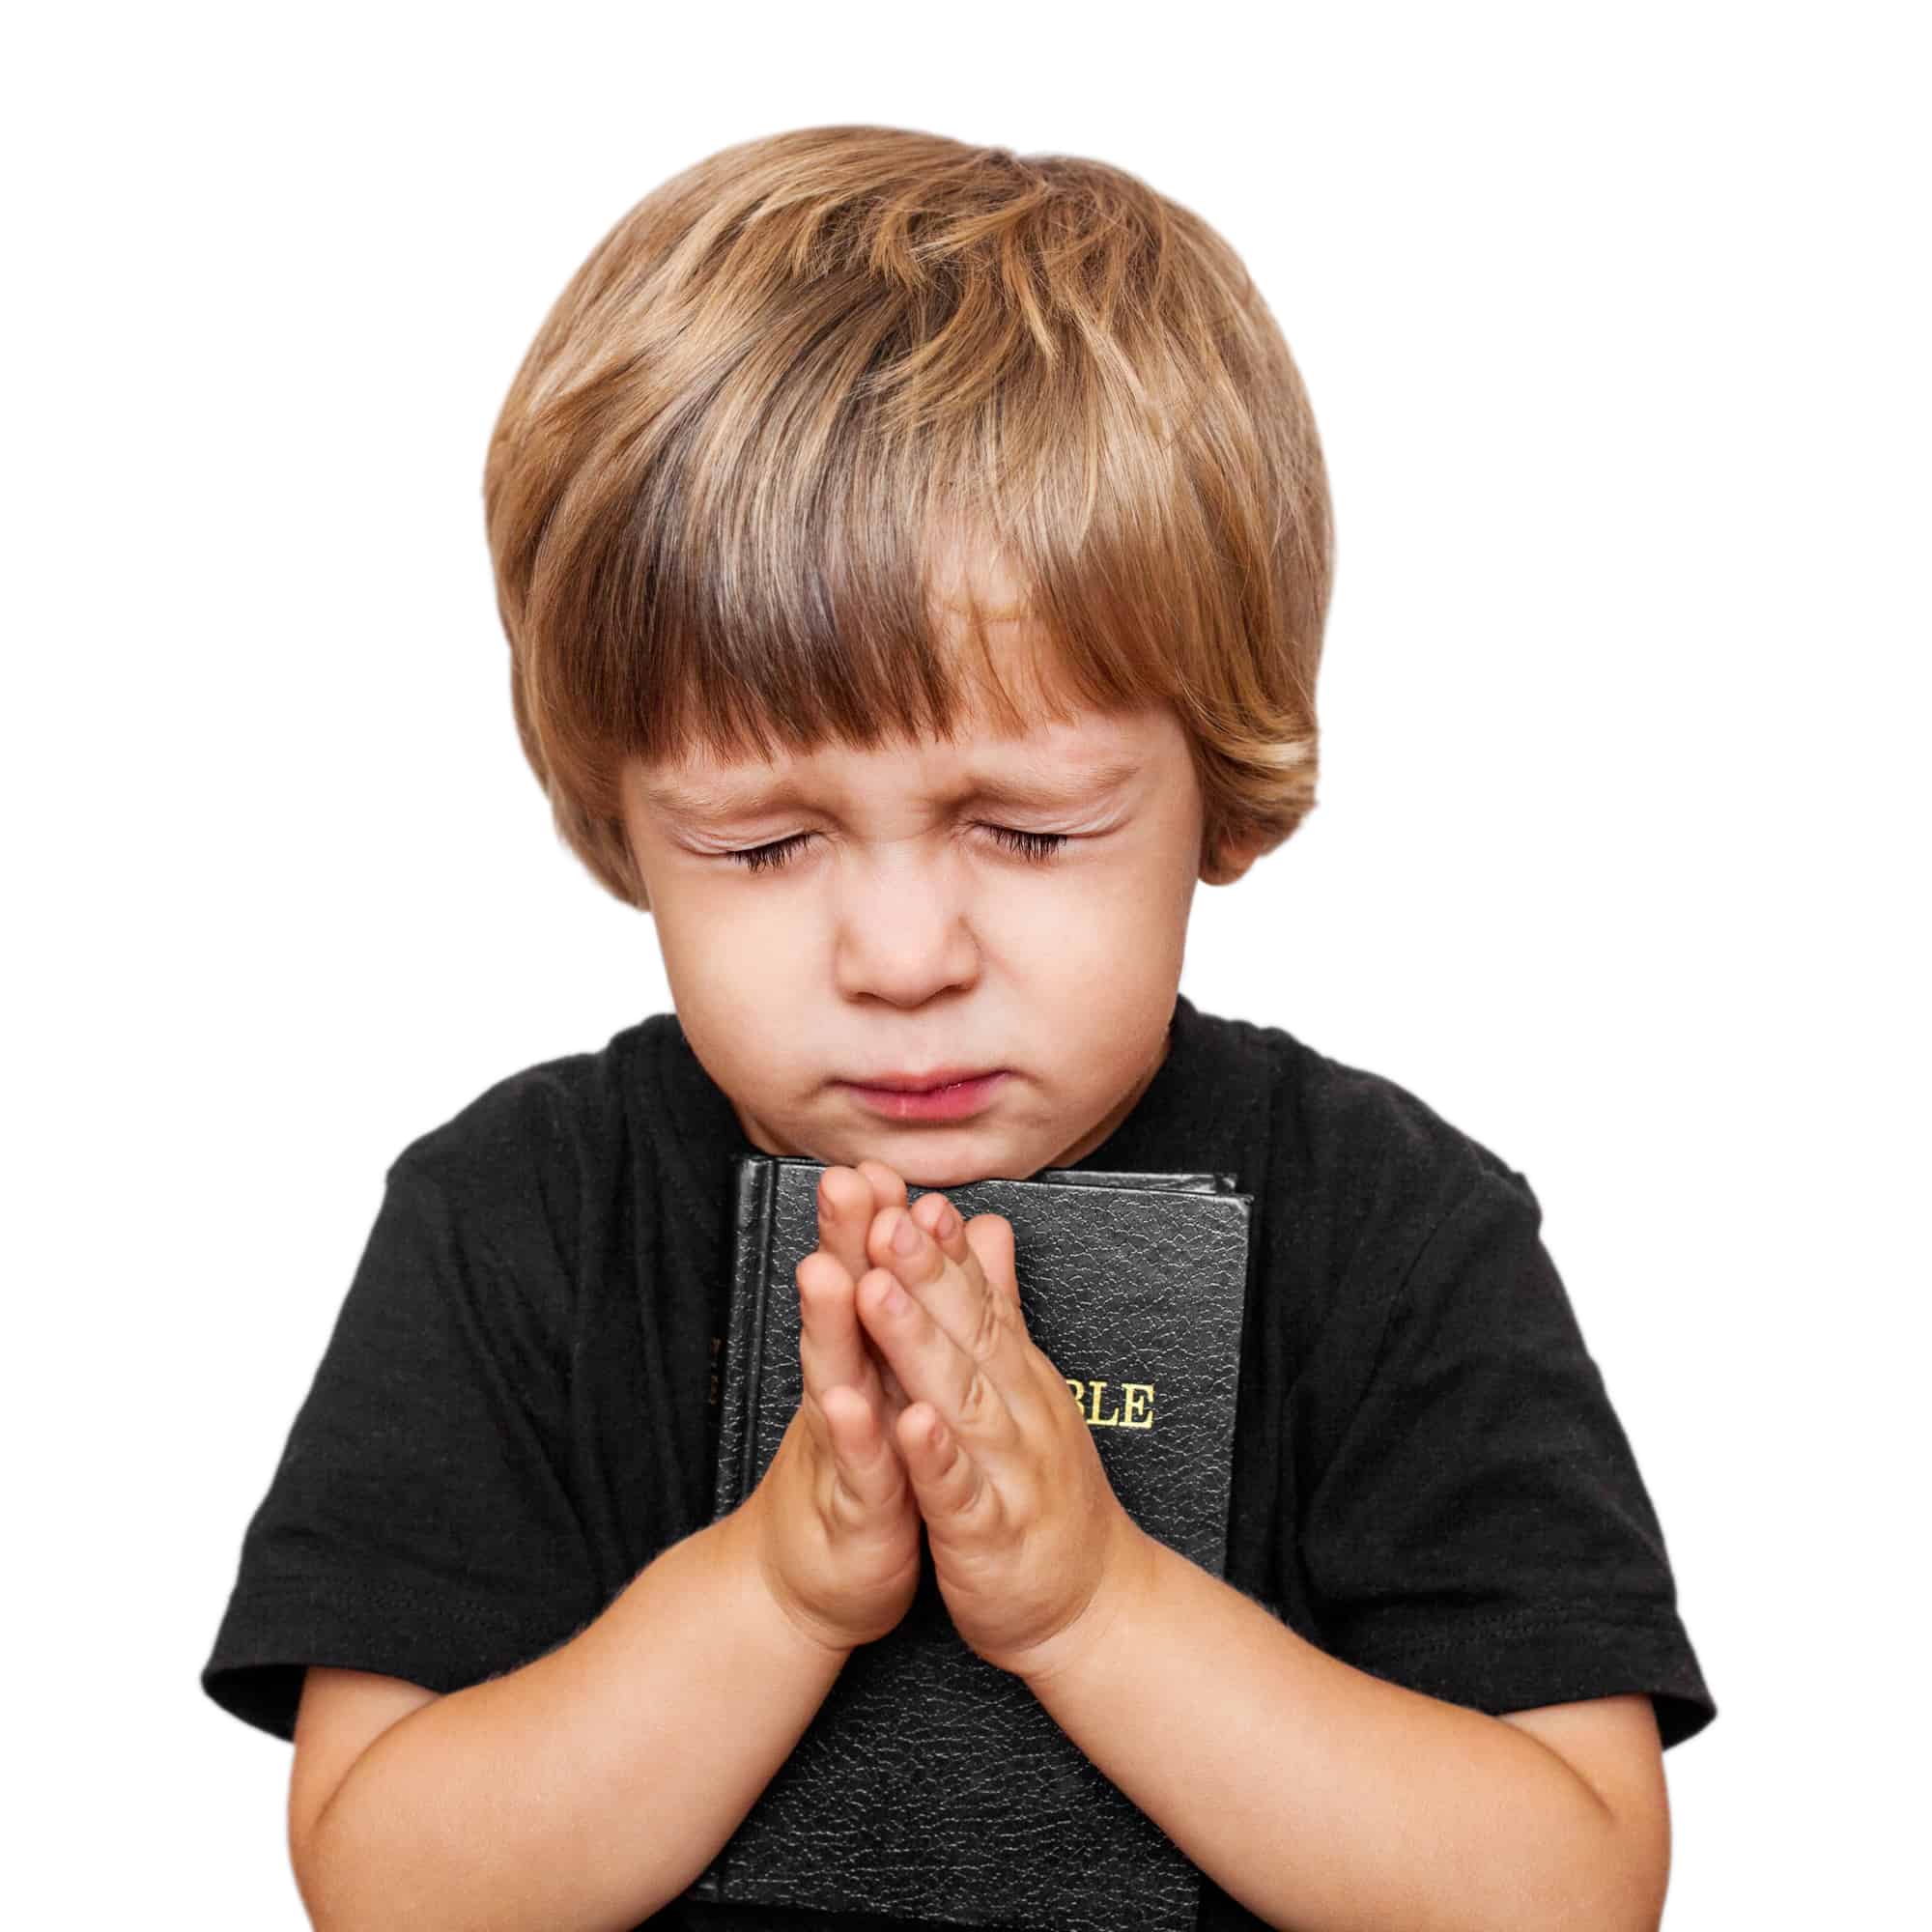 Children Praying To Jesus